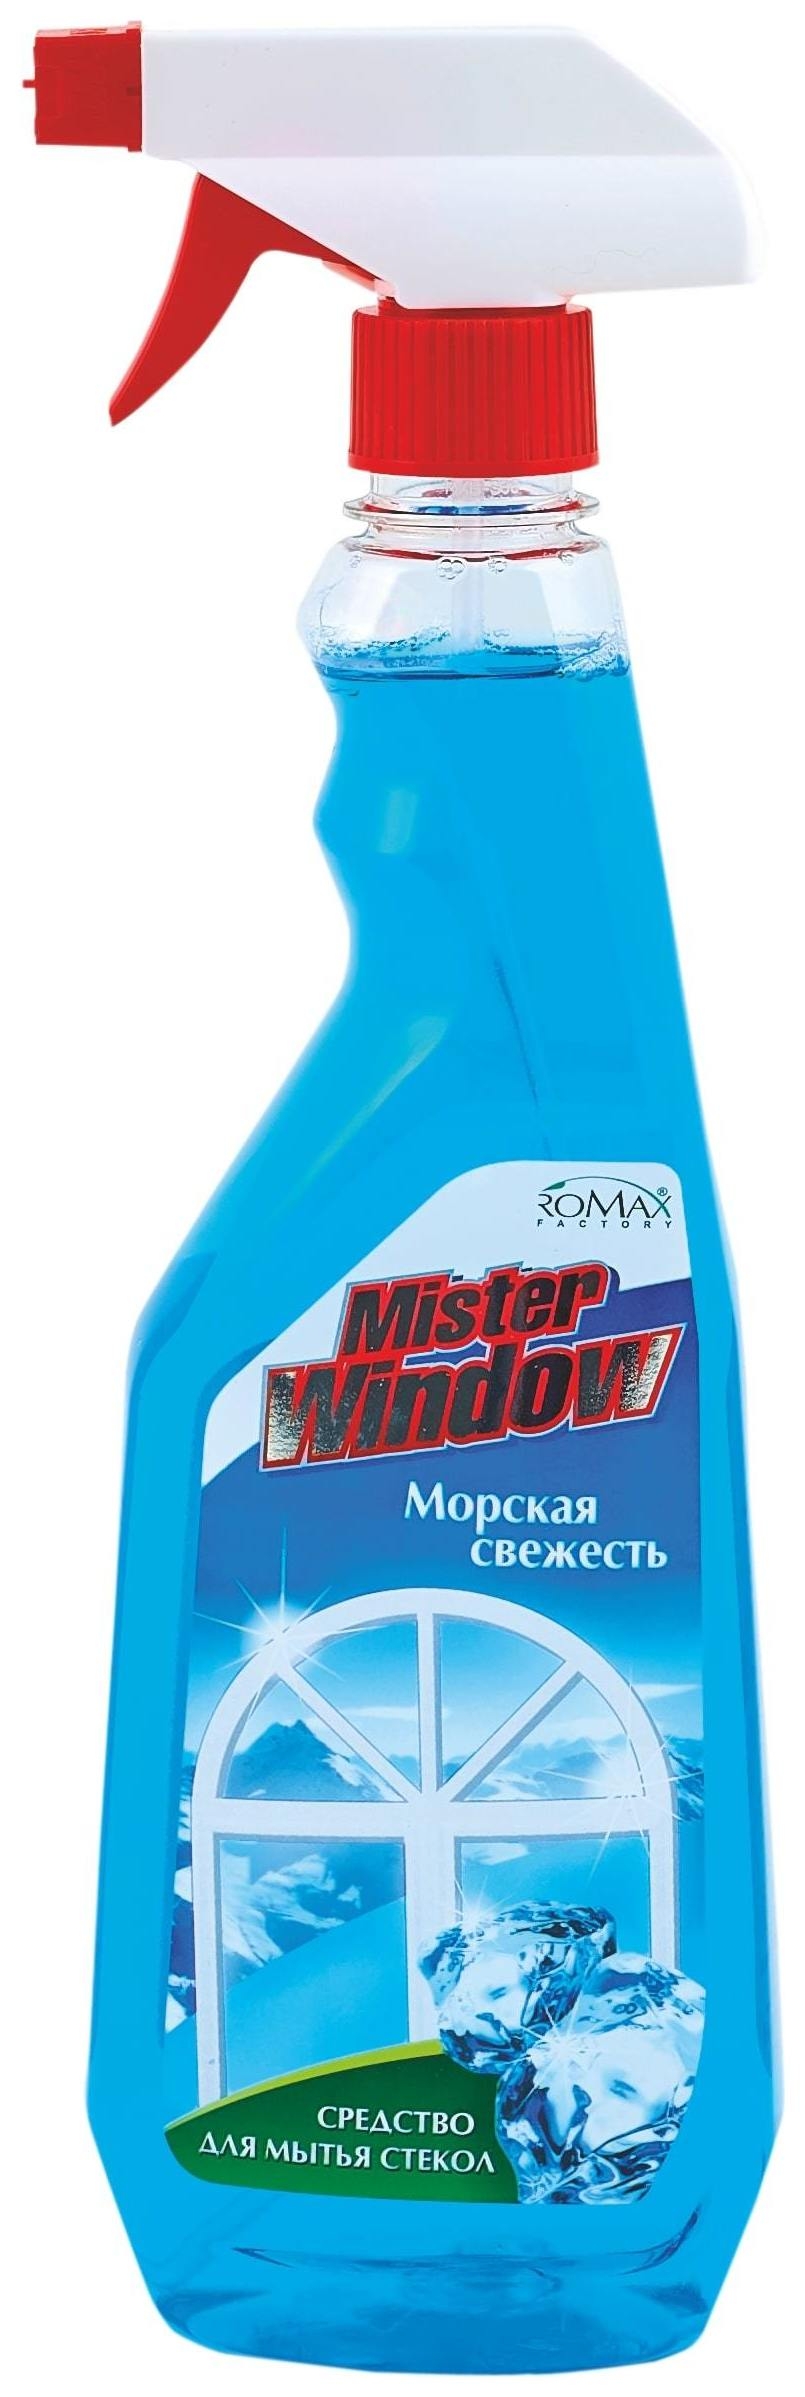  Средство для мытья окон свежесть морская Misterwindow